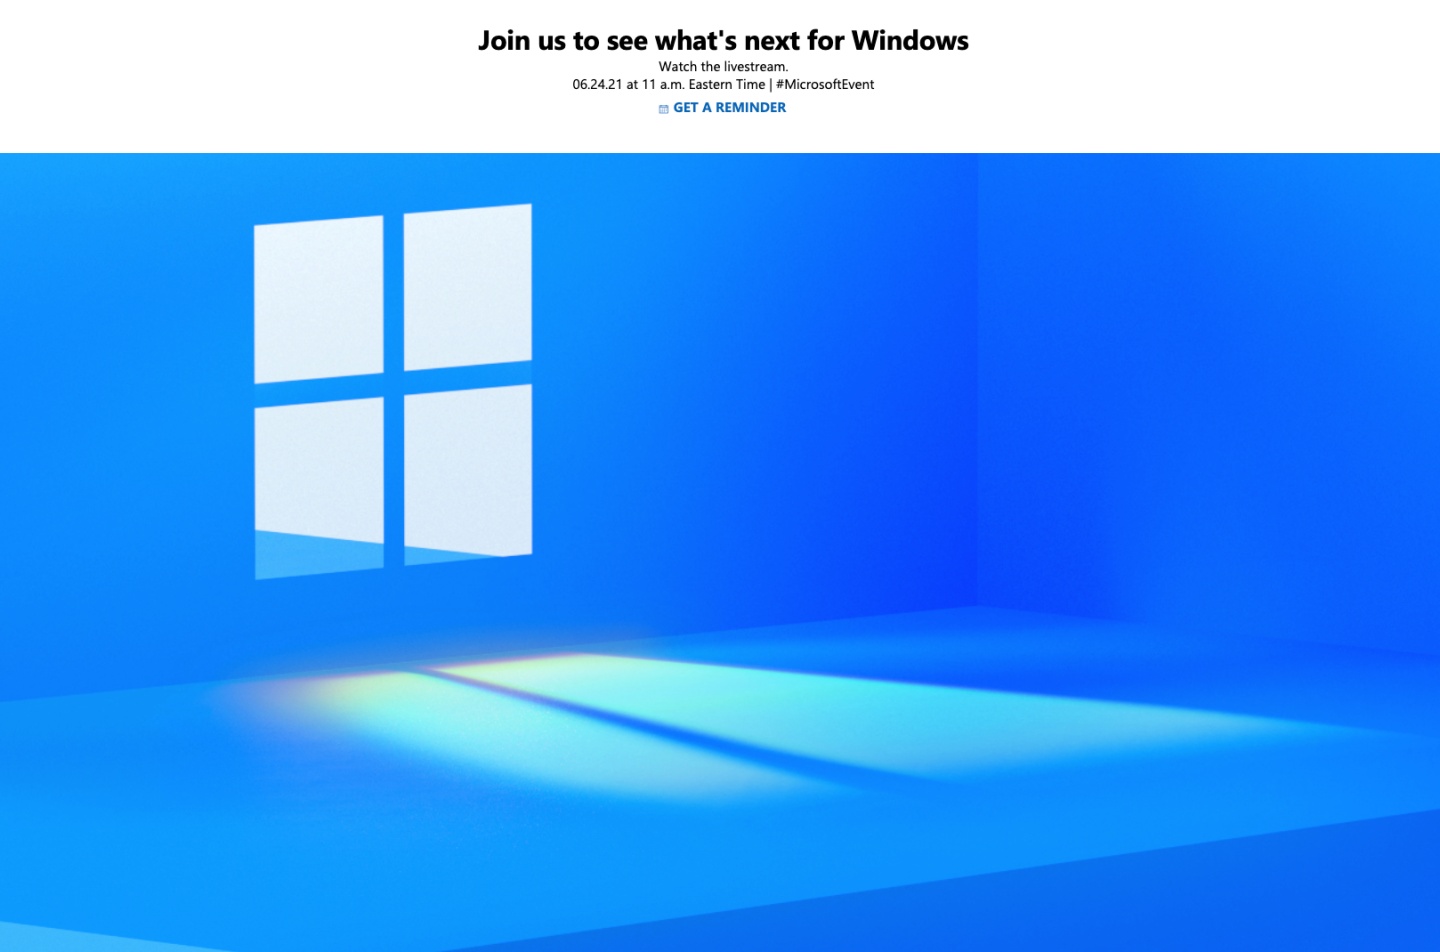 新一代 Windows 系統要來了！微軟將於 6/24 舉辦線上發表會